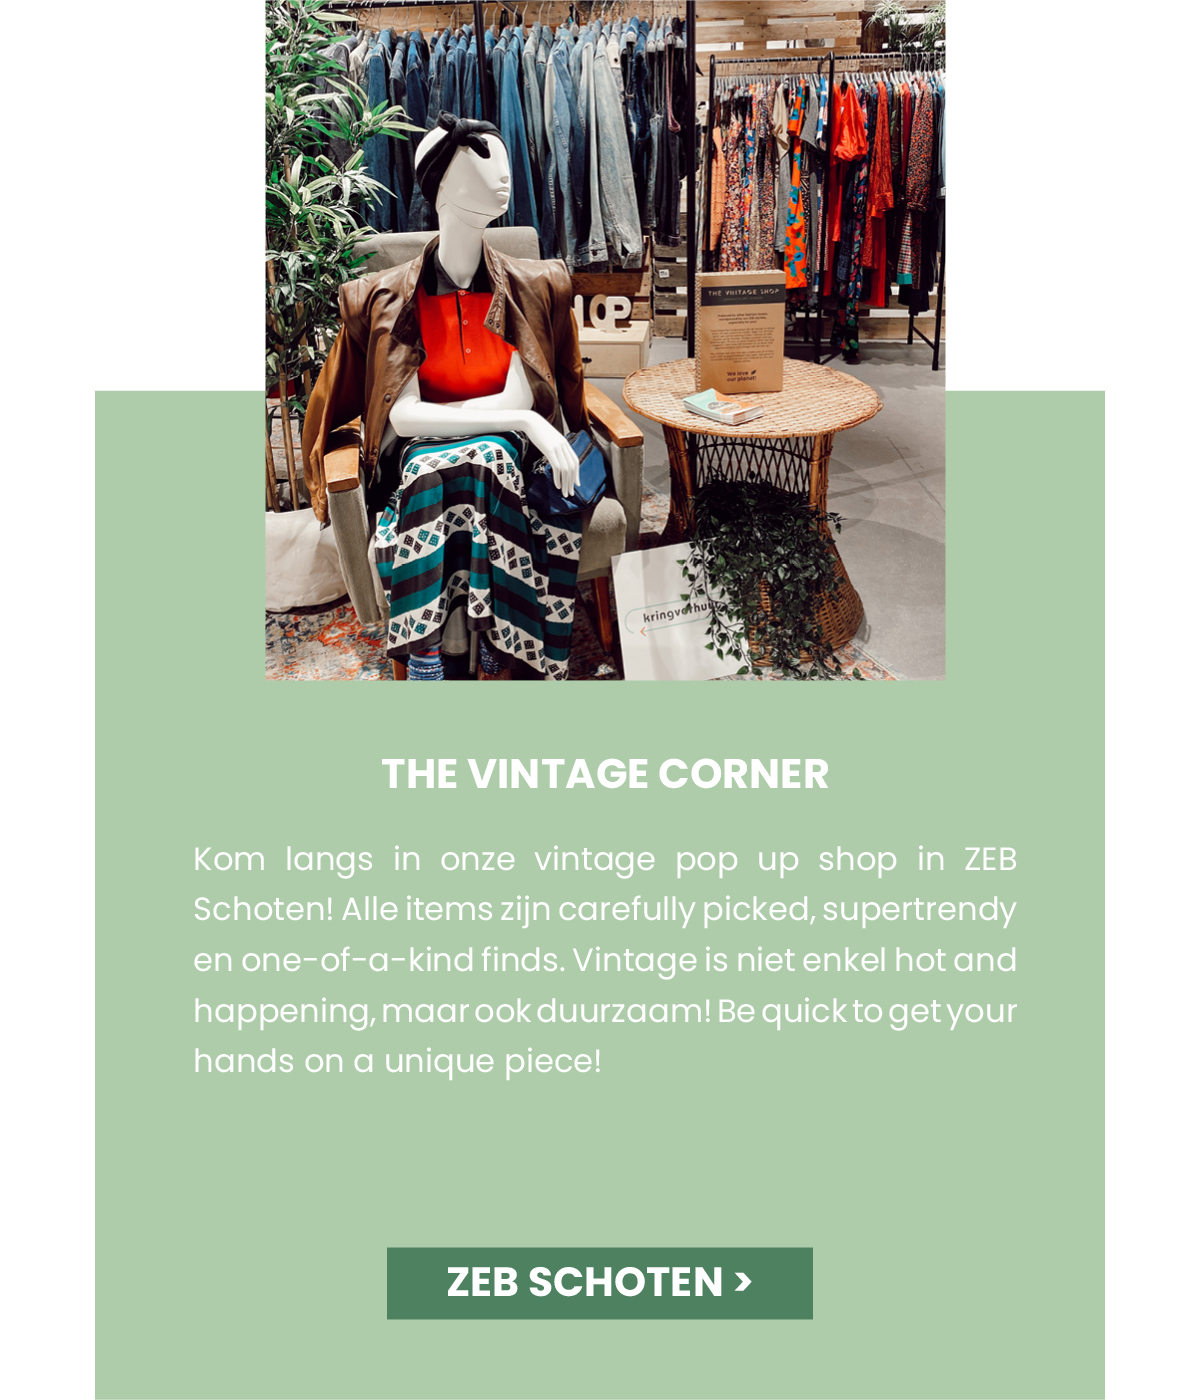 The Vintage Corner in ZEB Schoten